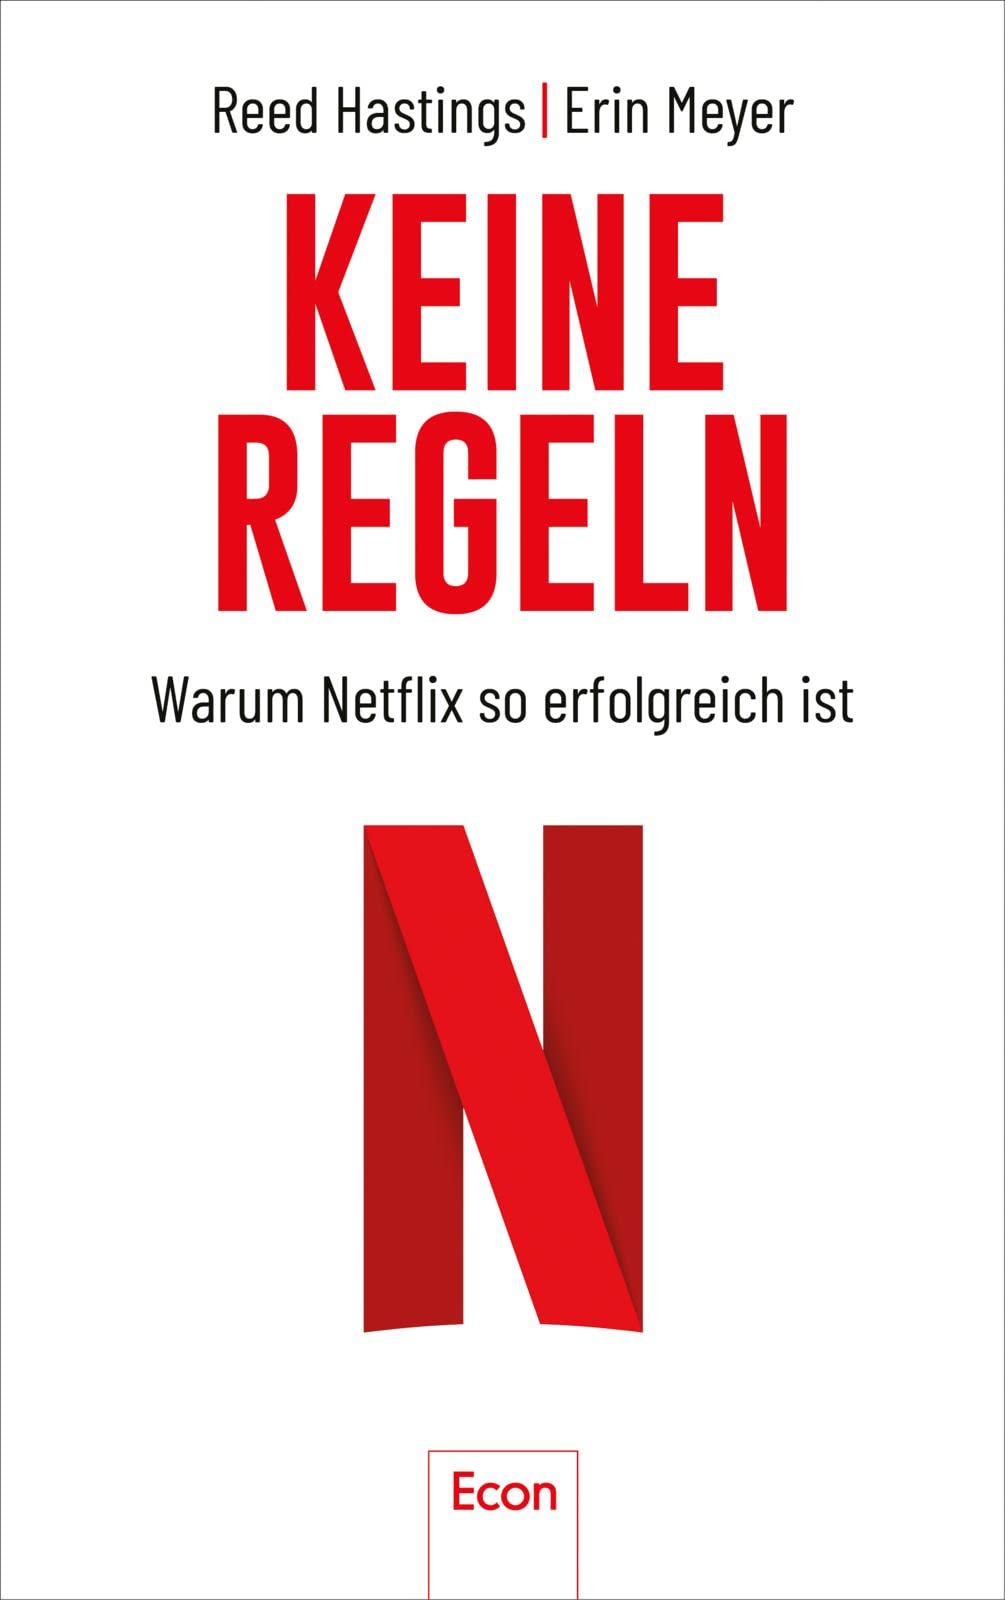 Reed Hastings, Erin Meyer: Keine Regeln (Hardcover, German language, 2020, Ecom)